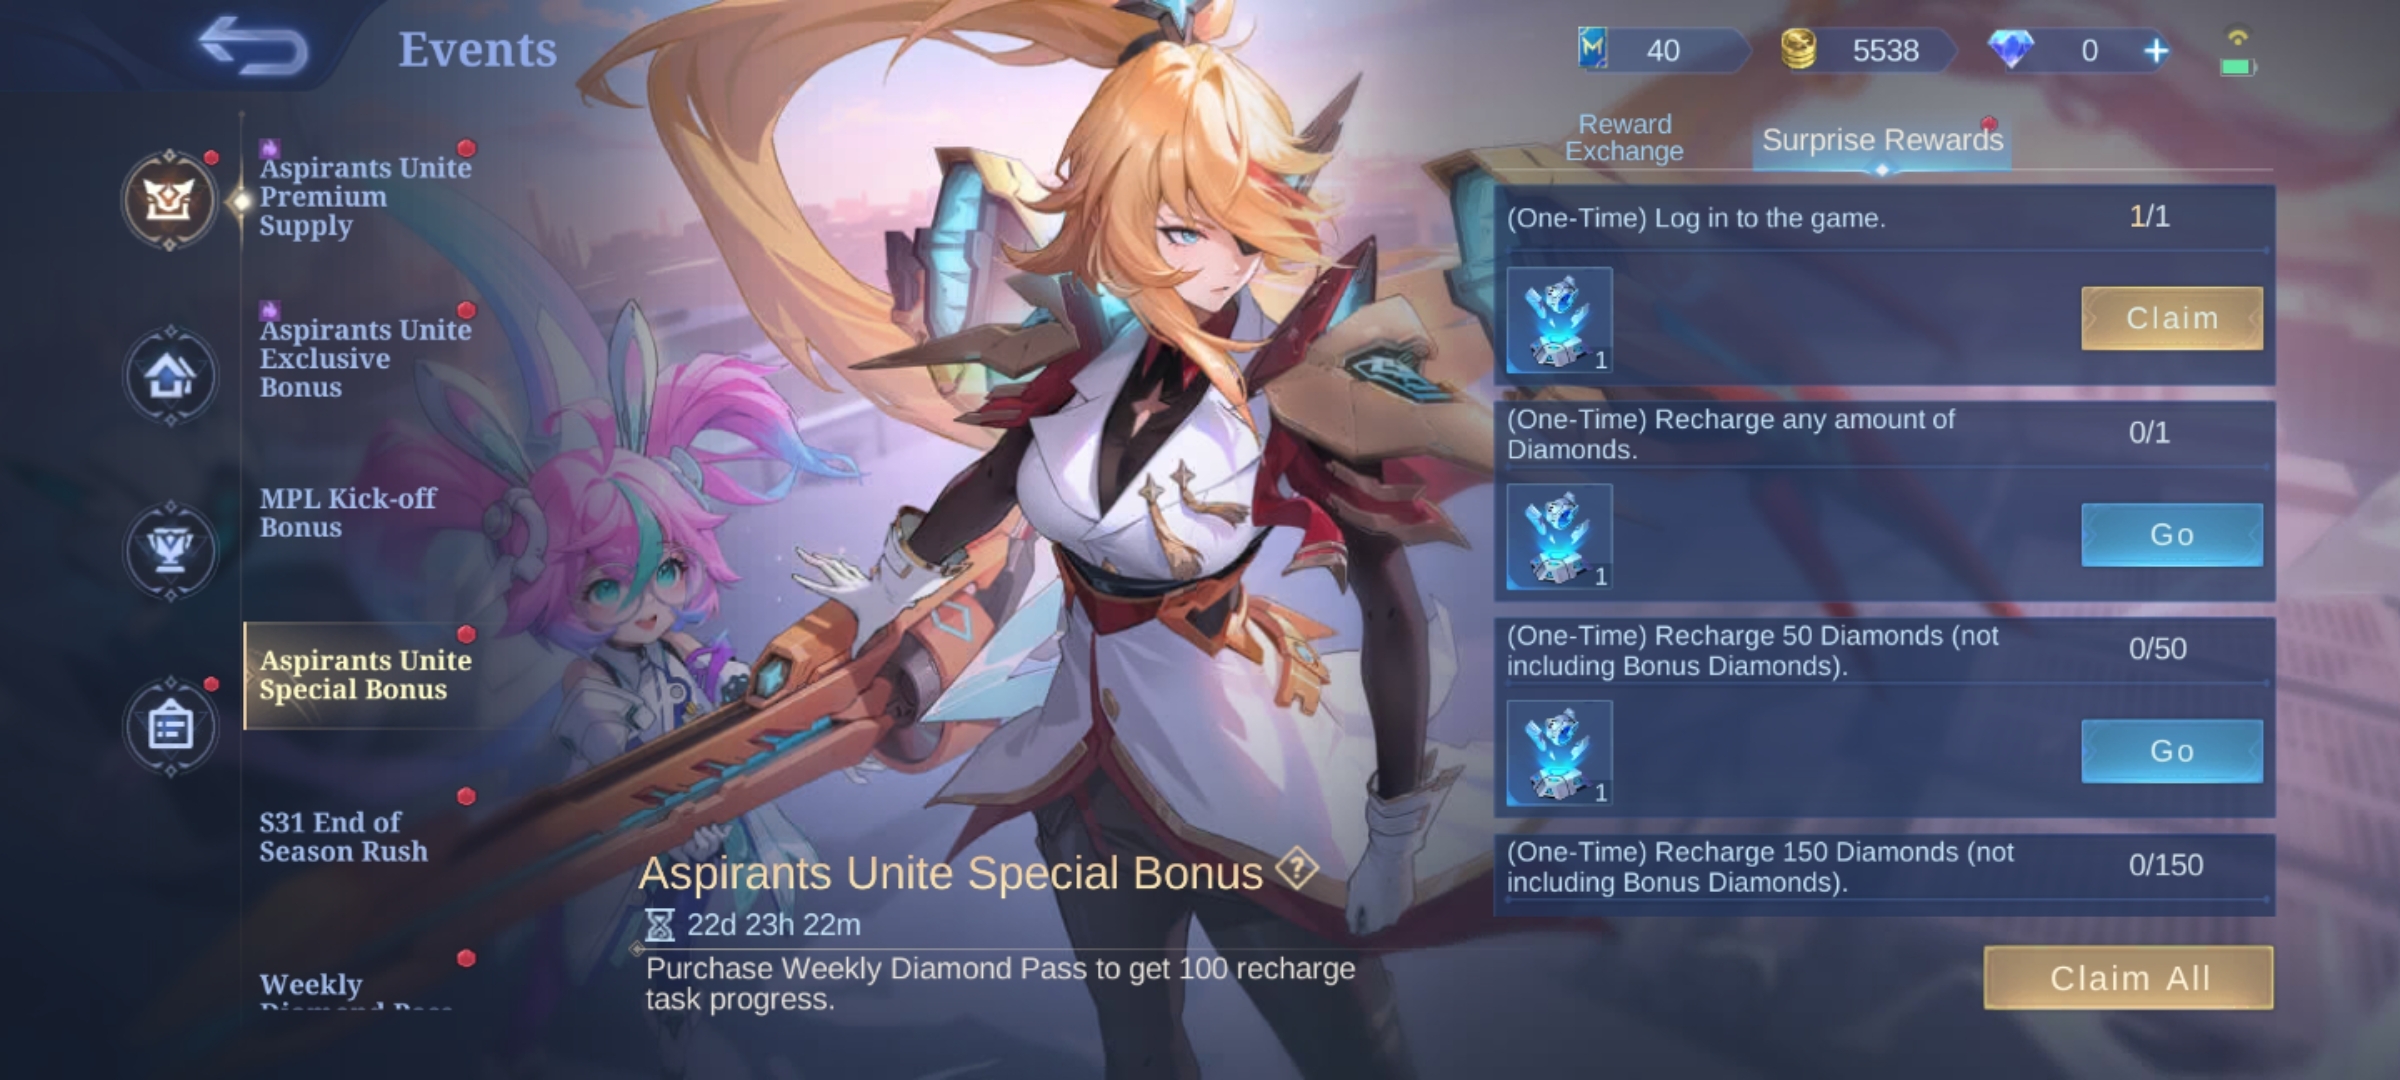 Aspirants Unite Special Bonus